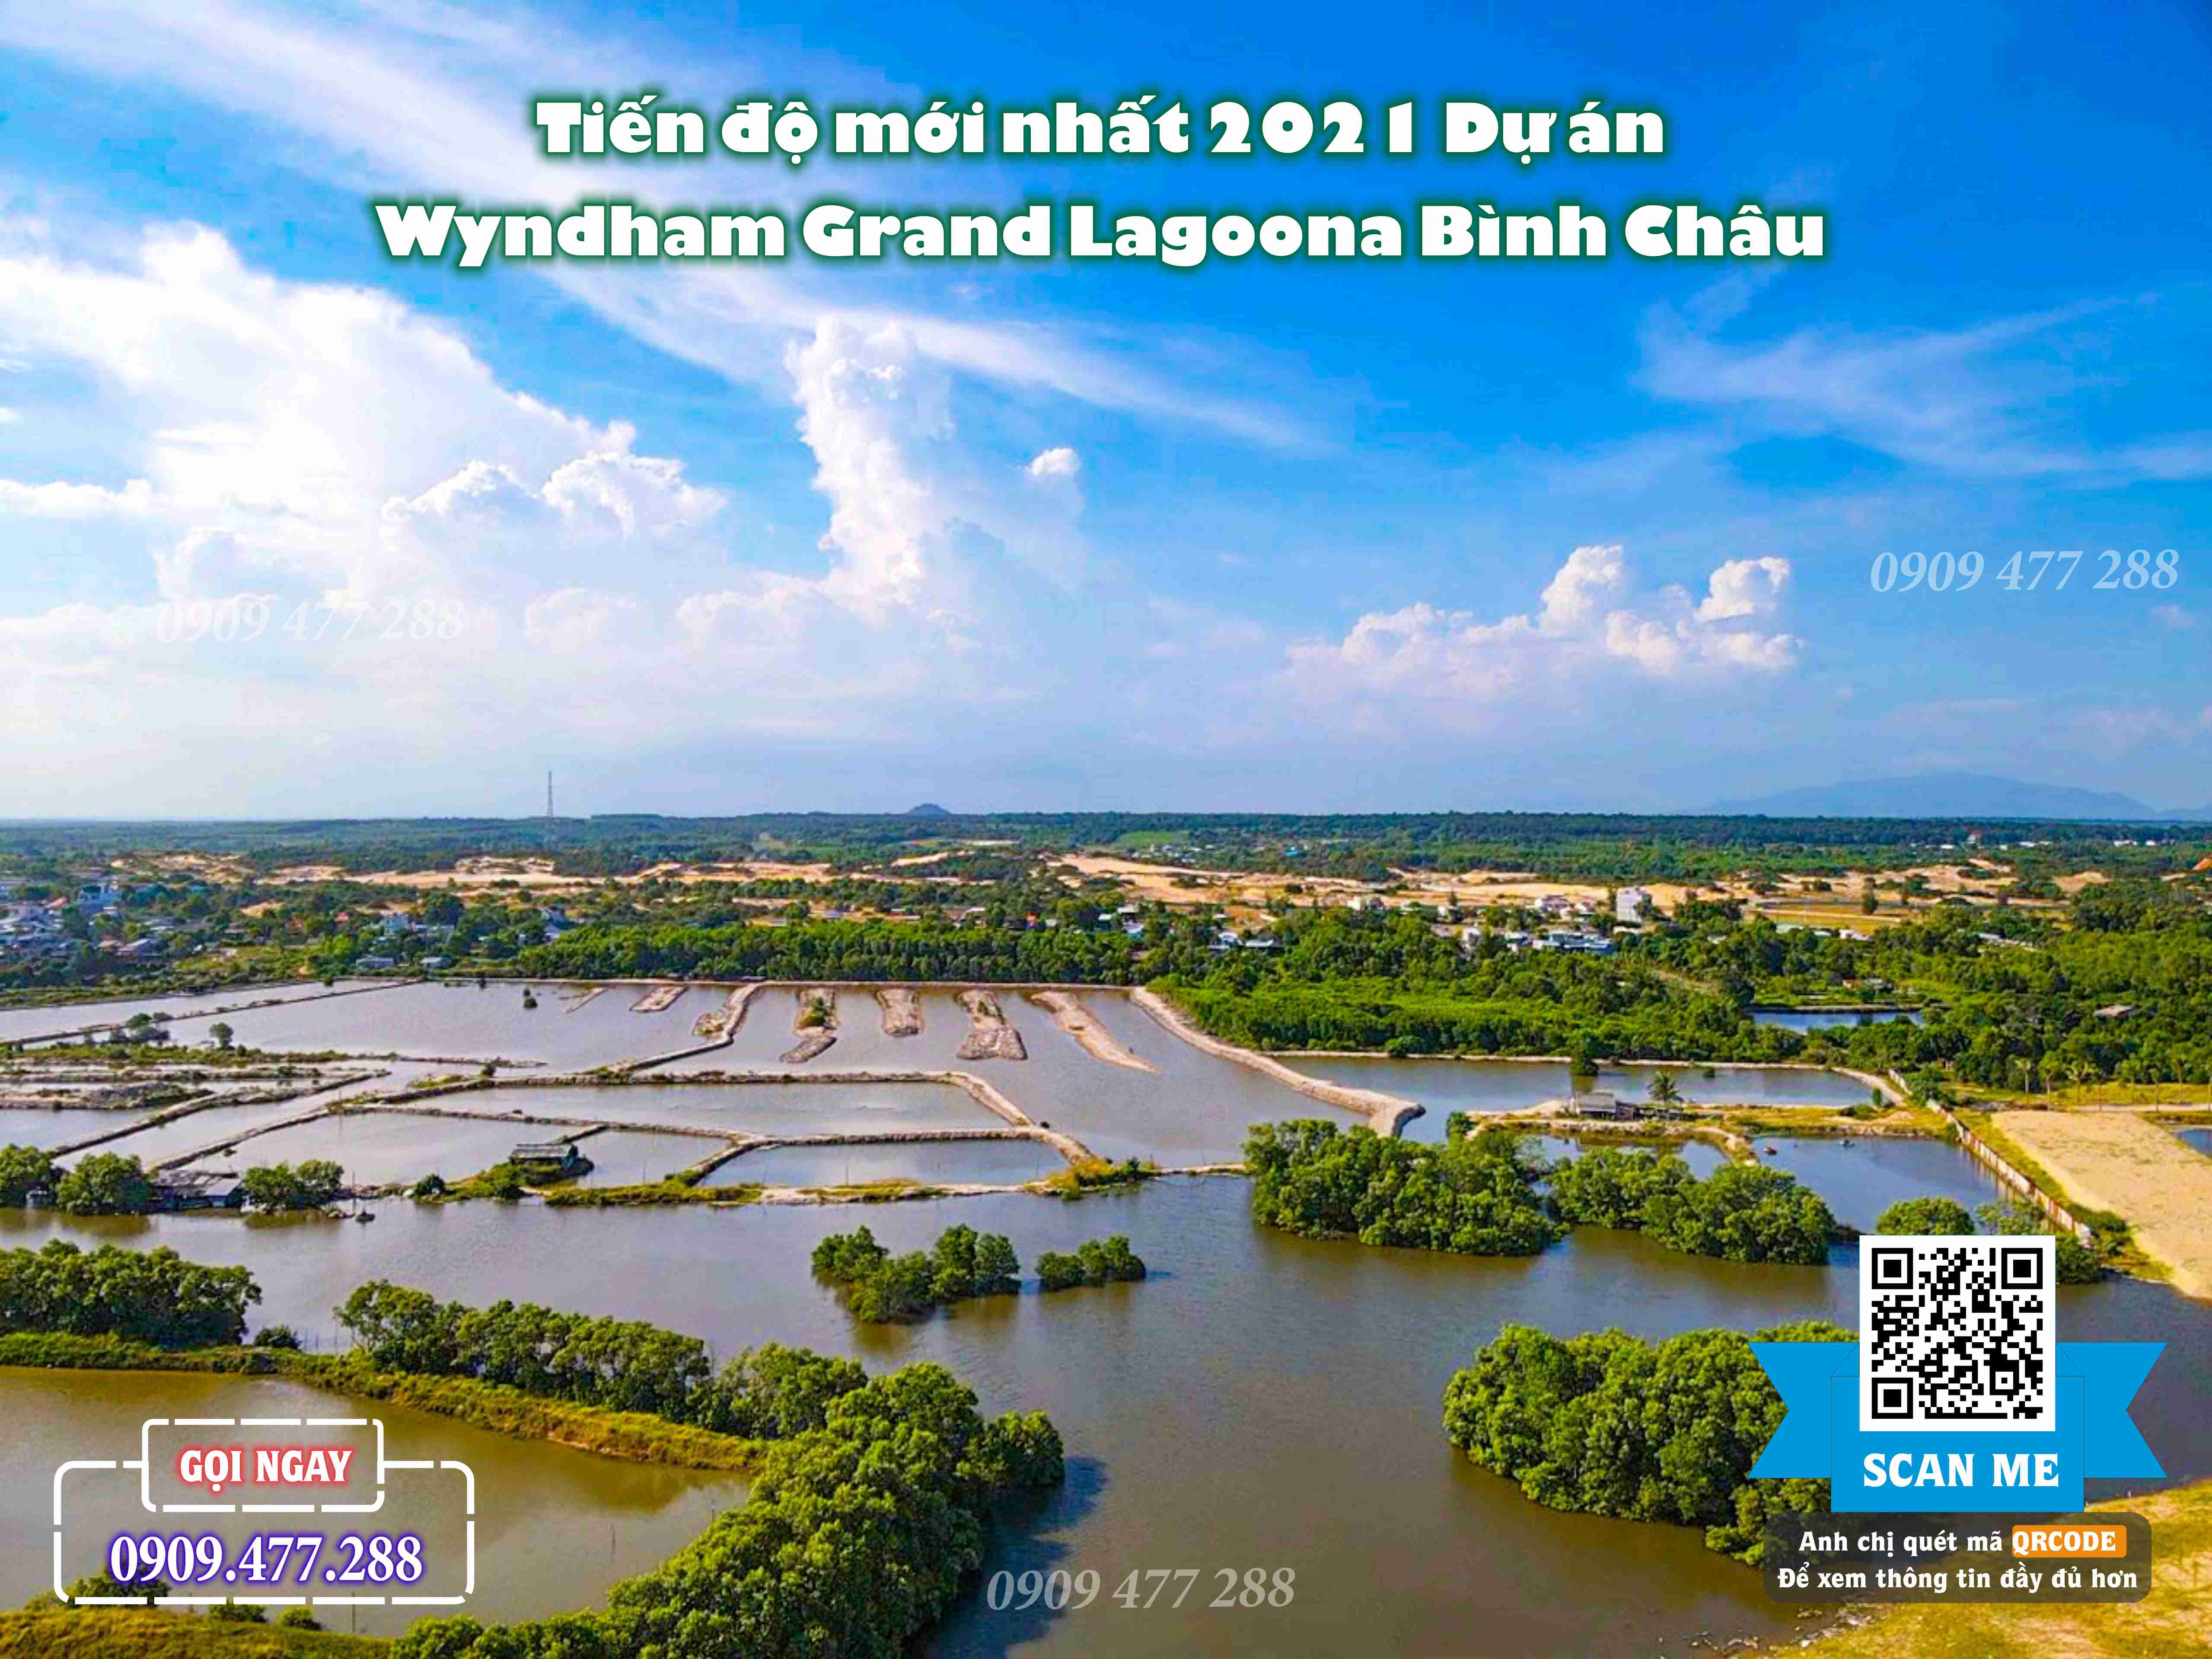 Wyndham Grand Lagoona Bình Châu (10)